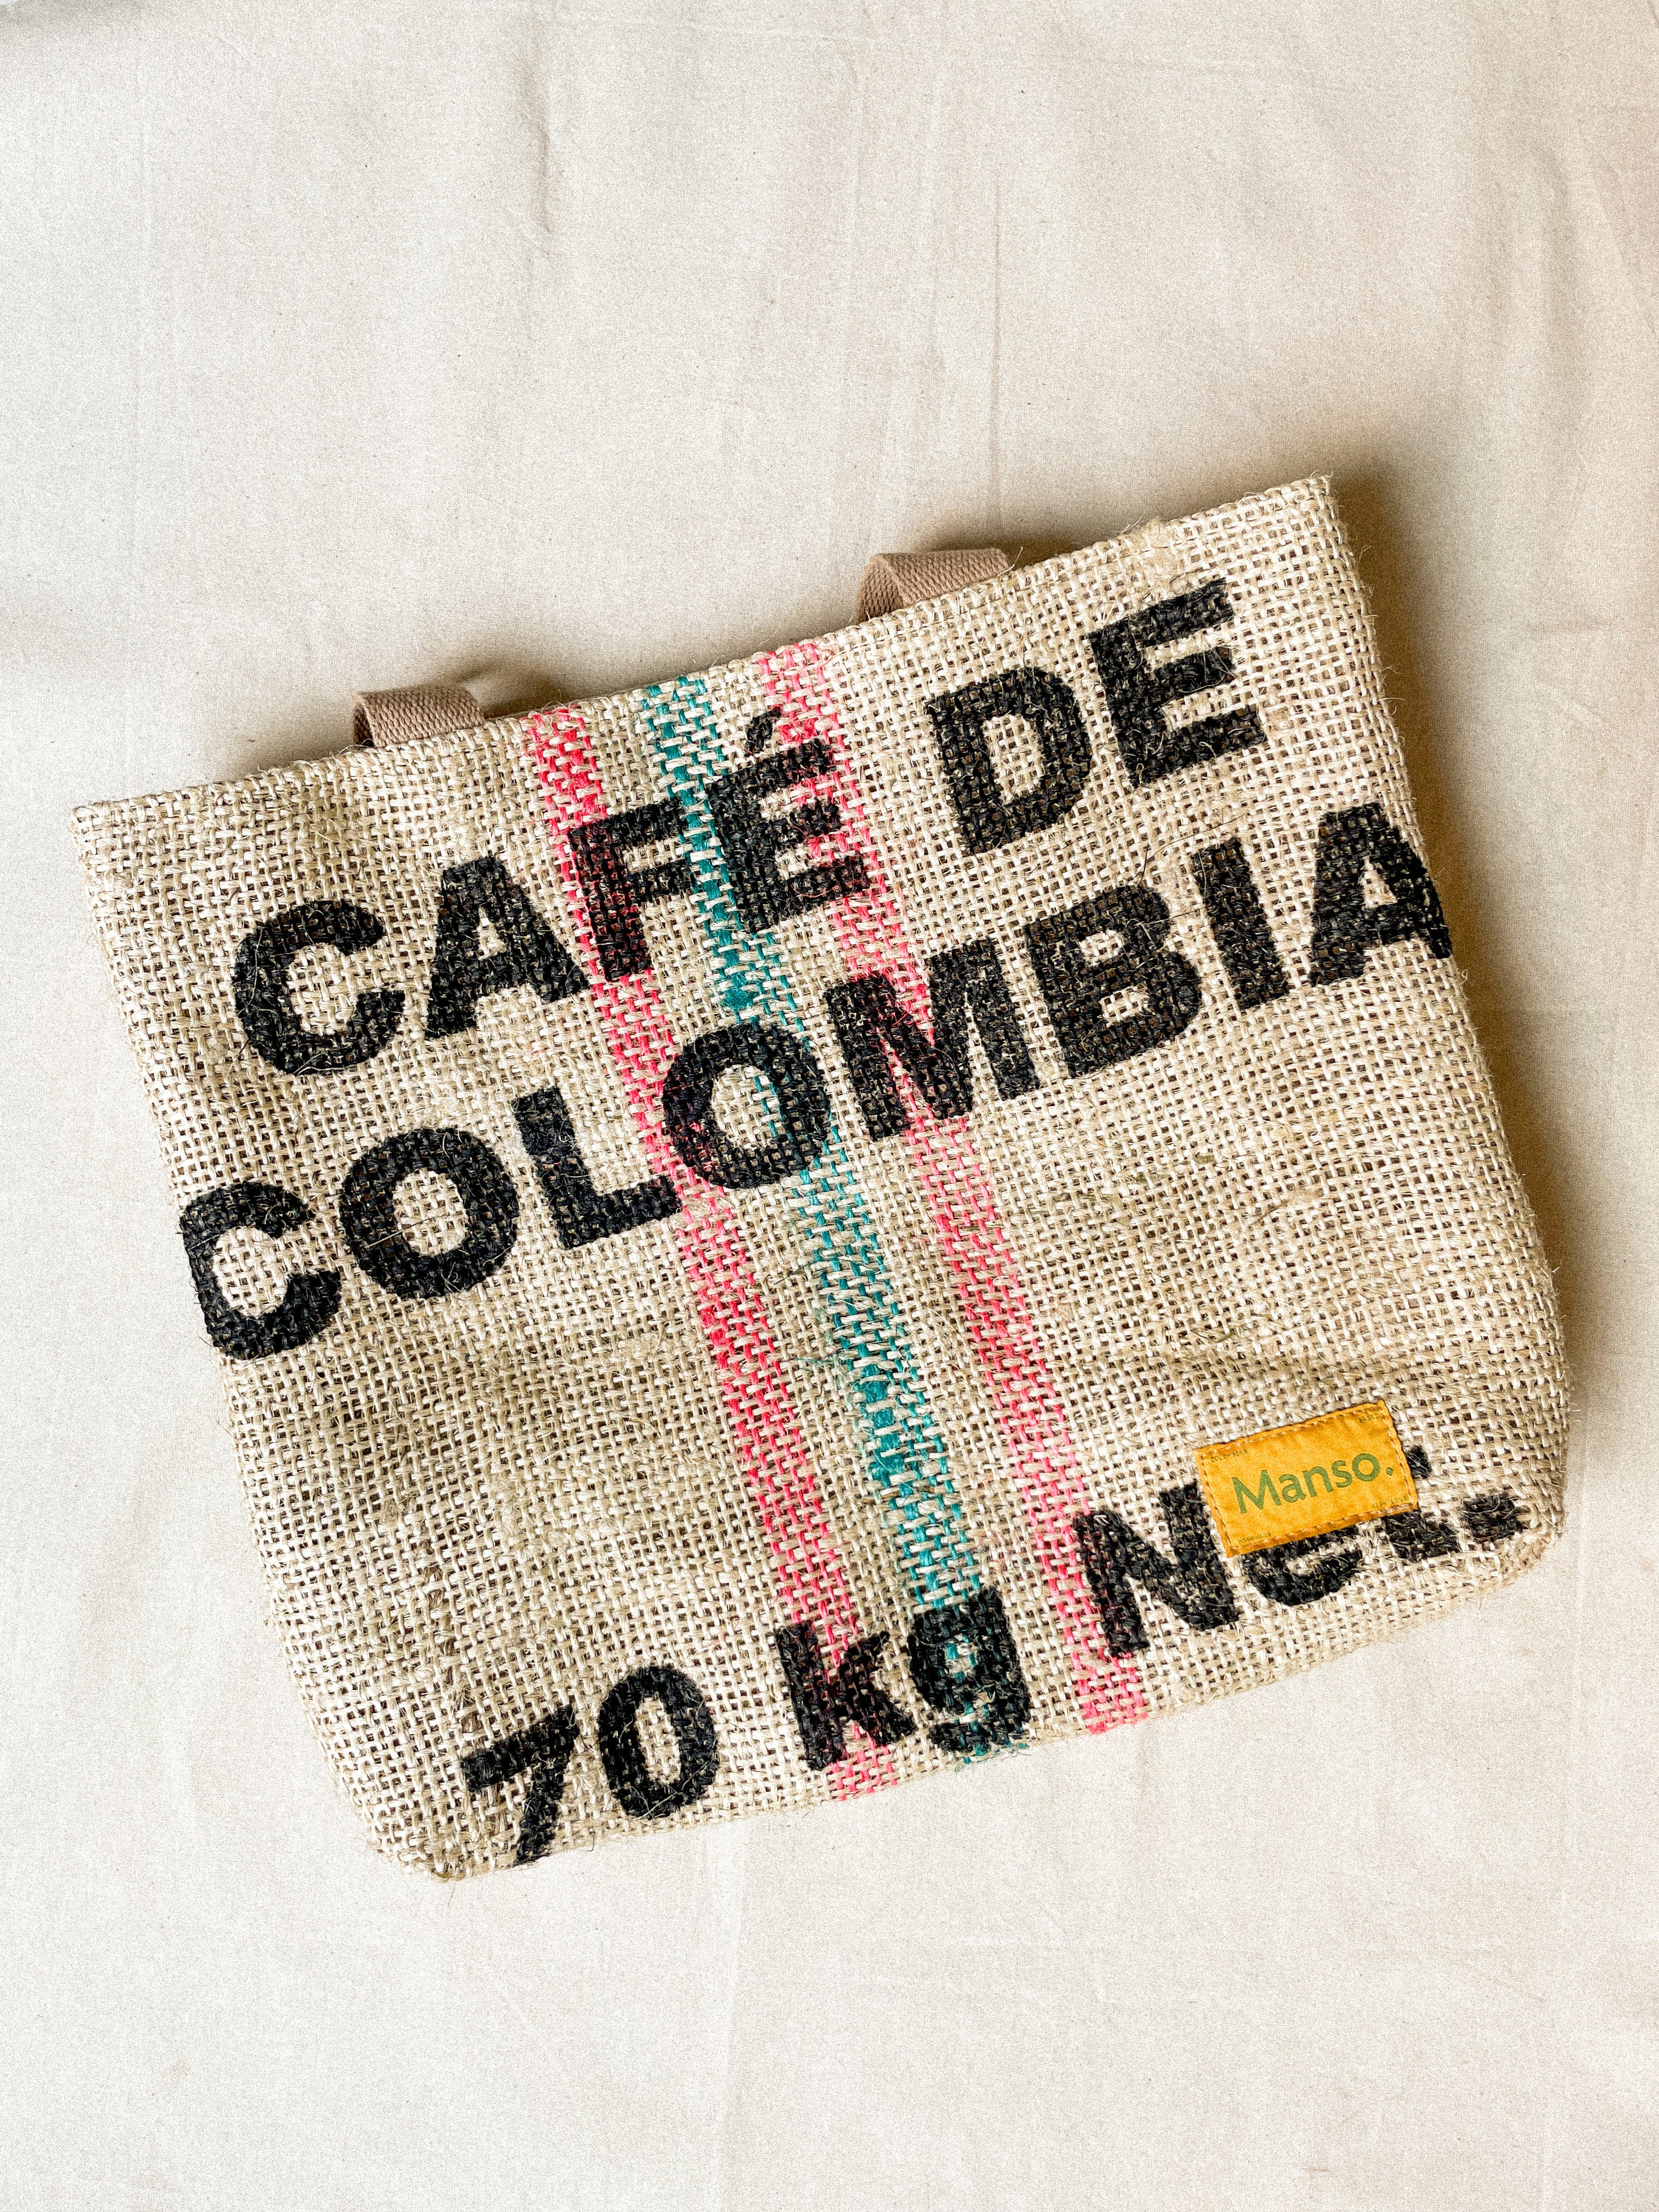 El rayao (Café de Colombia)